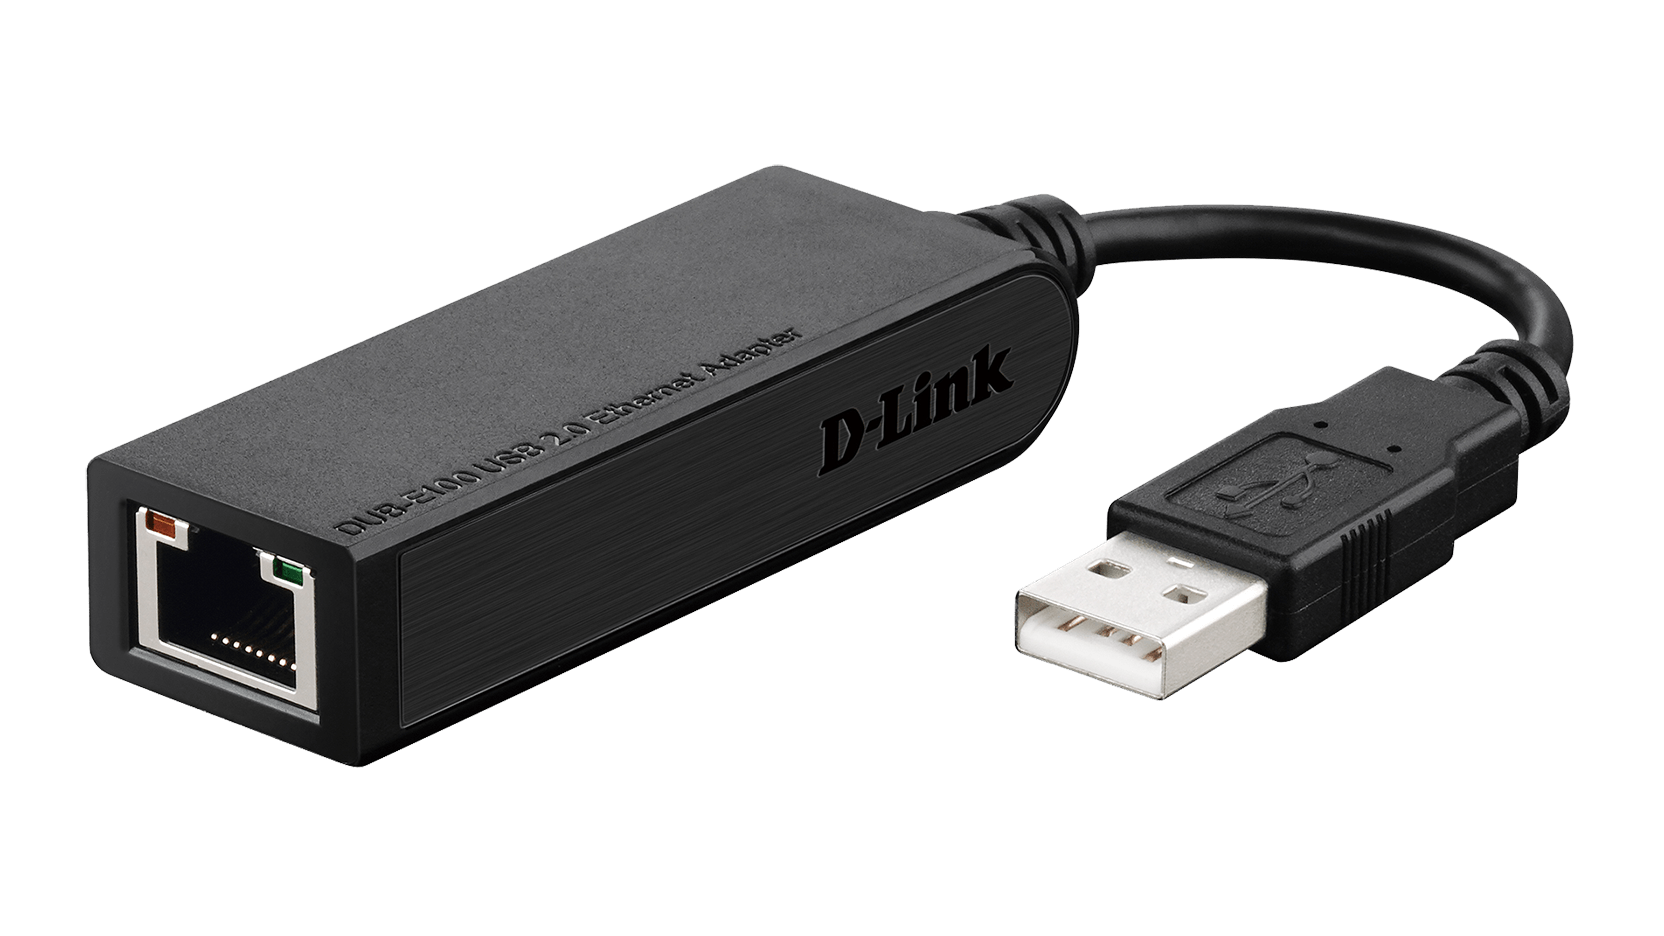 D-Link Hi-speed USB 2.0 10/100 Ethernet Adapter